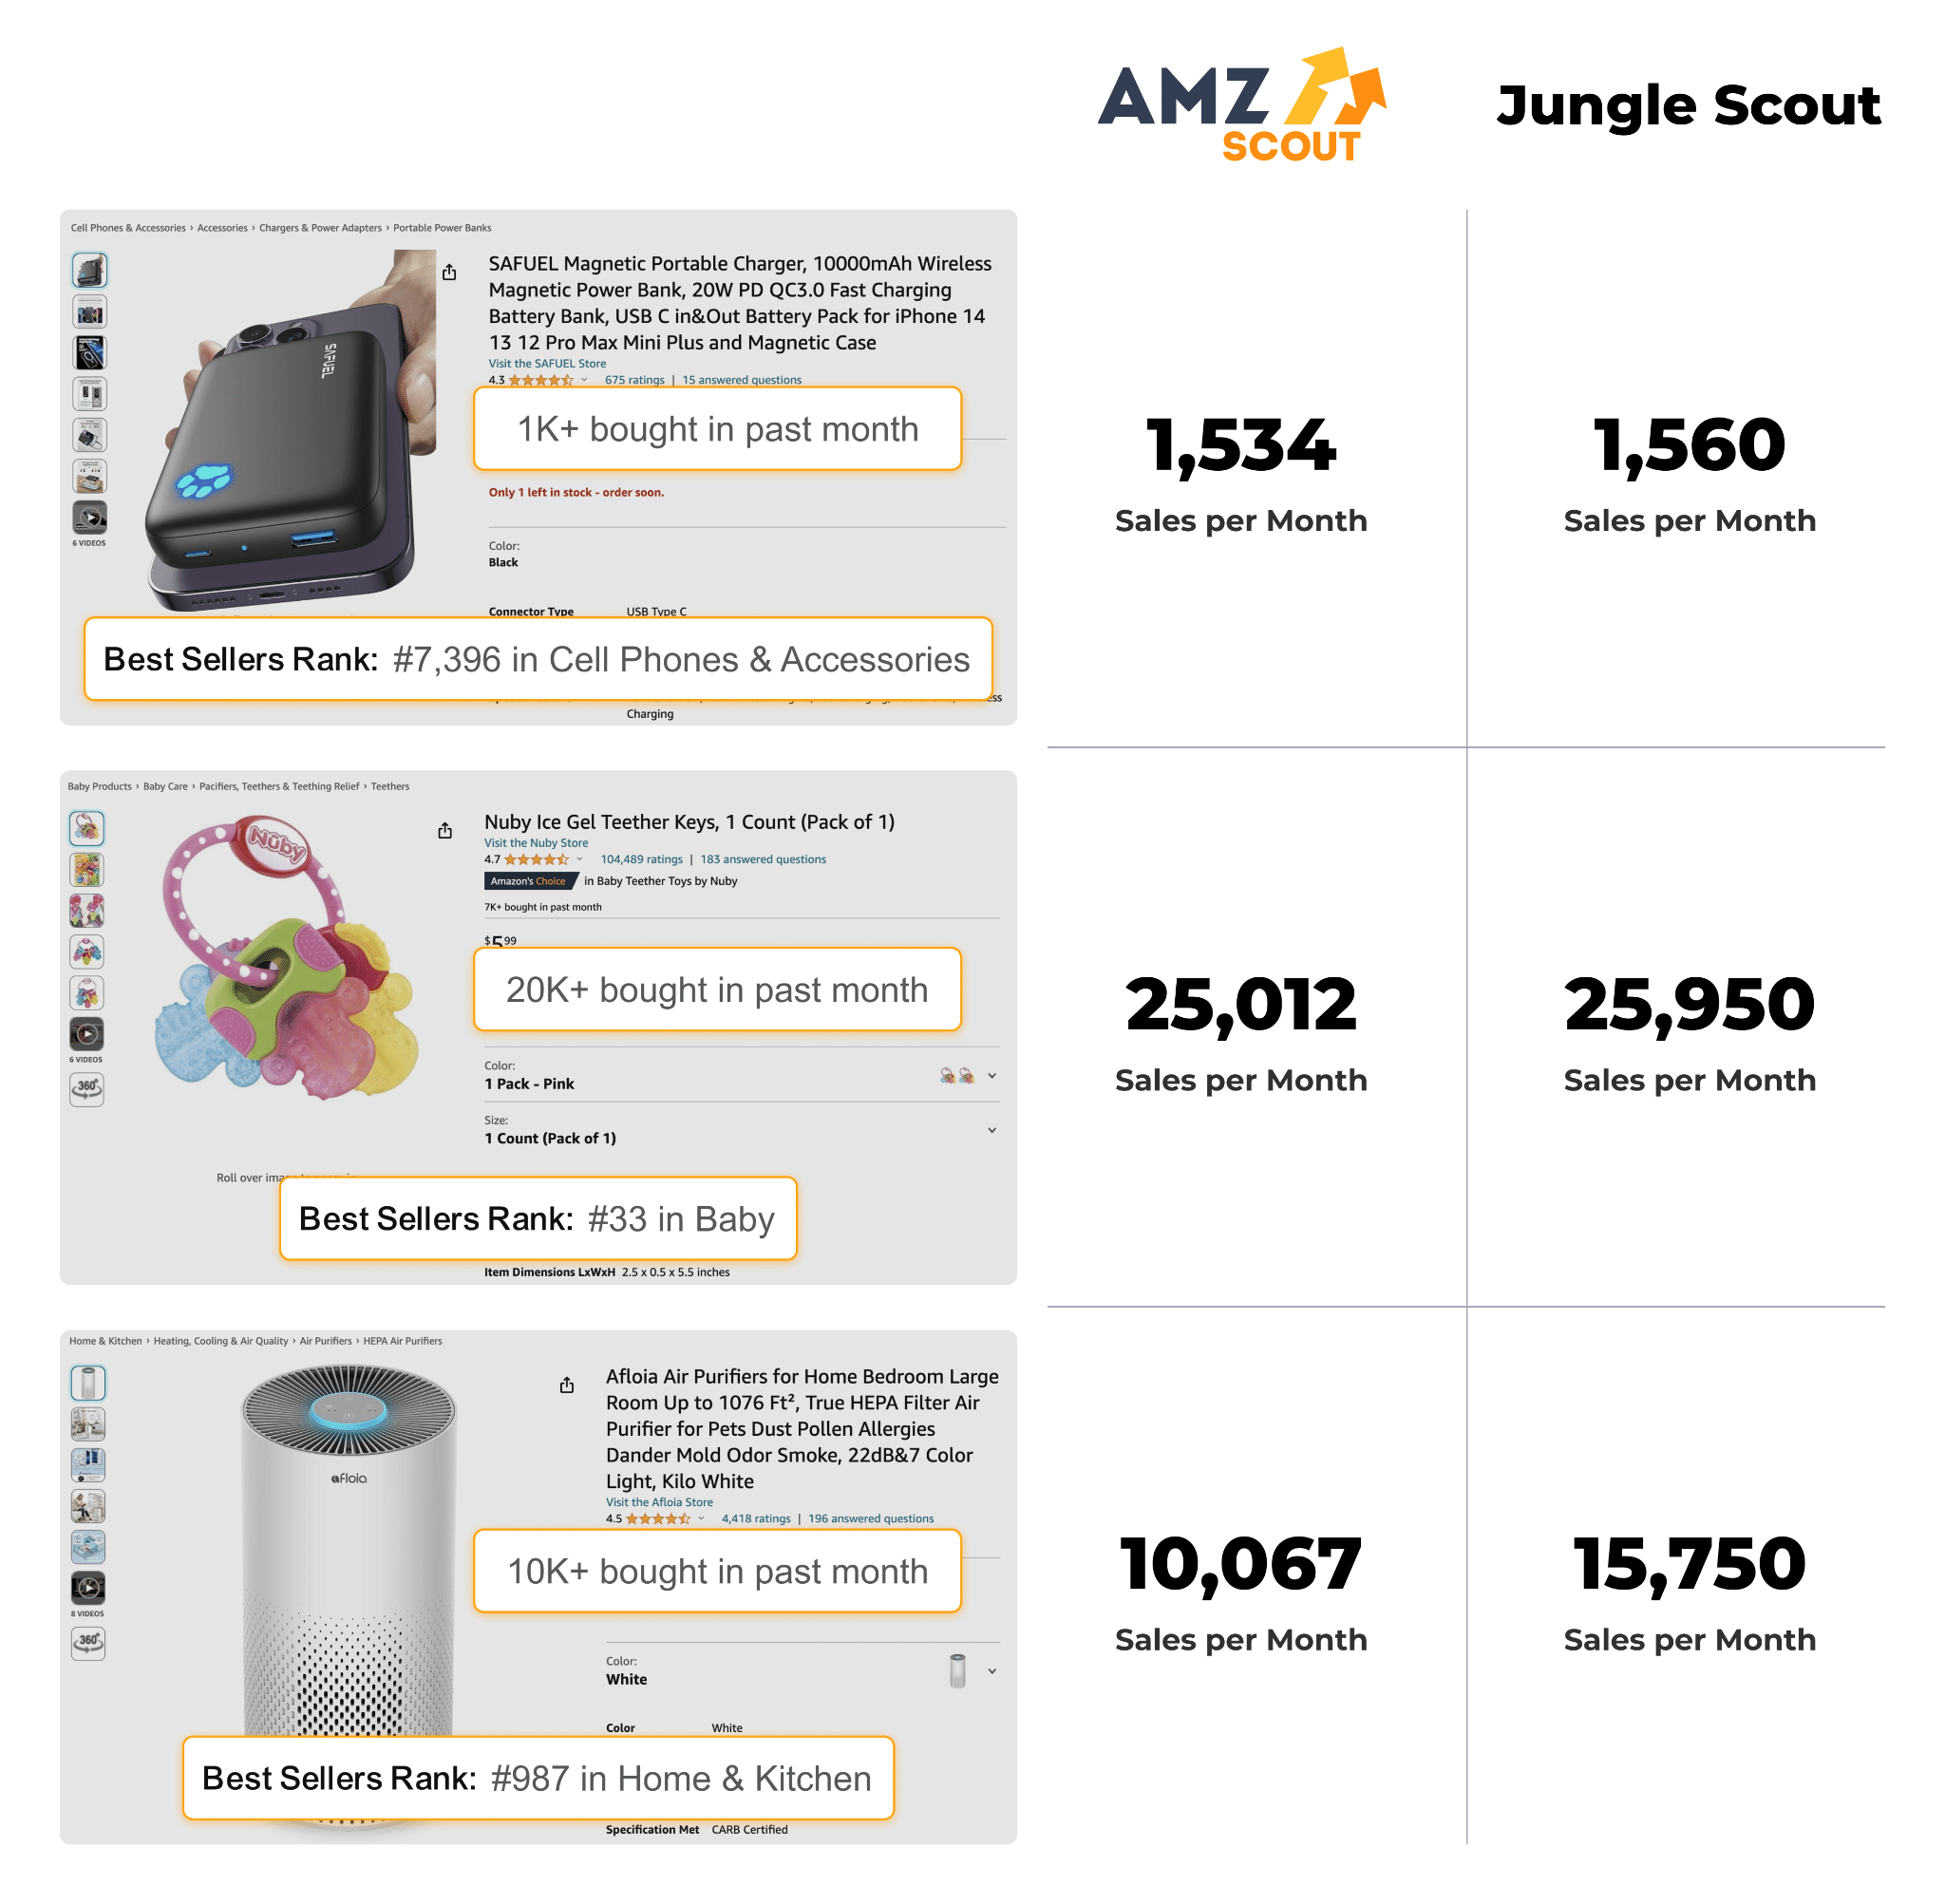 amzscout-jungle-scout-comparison